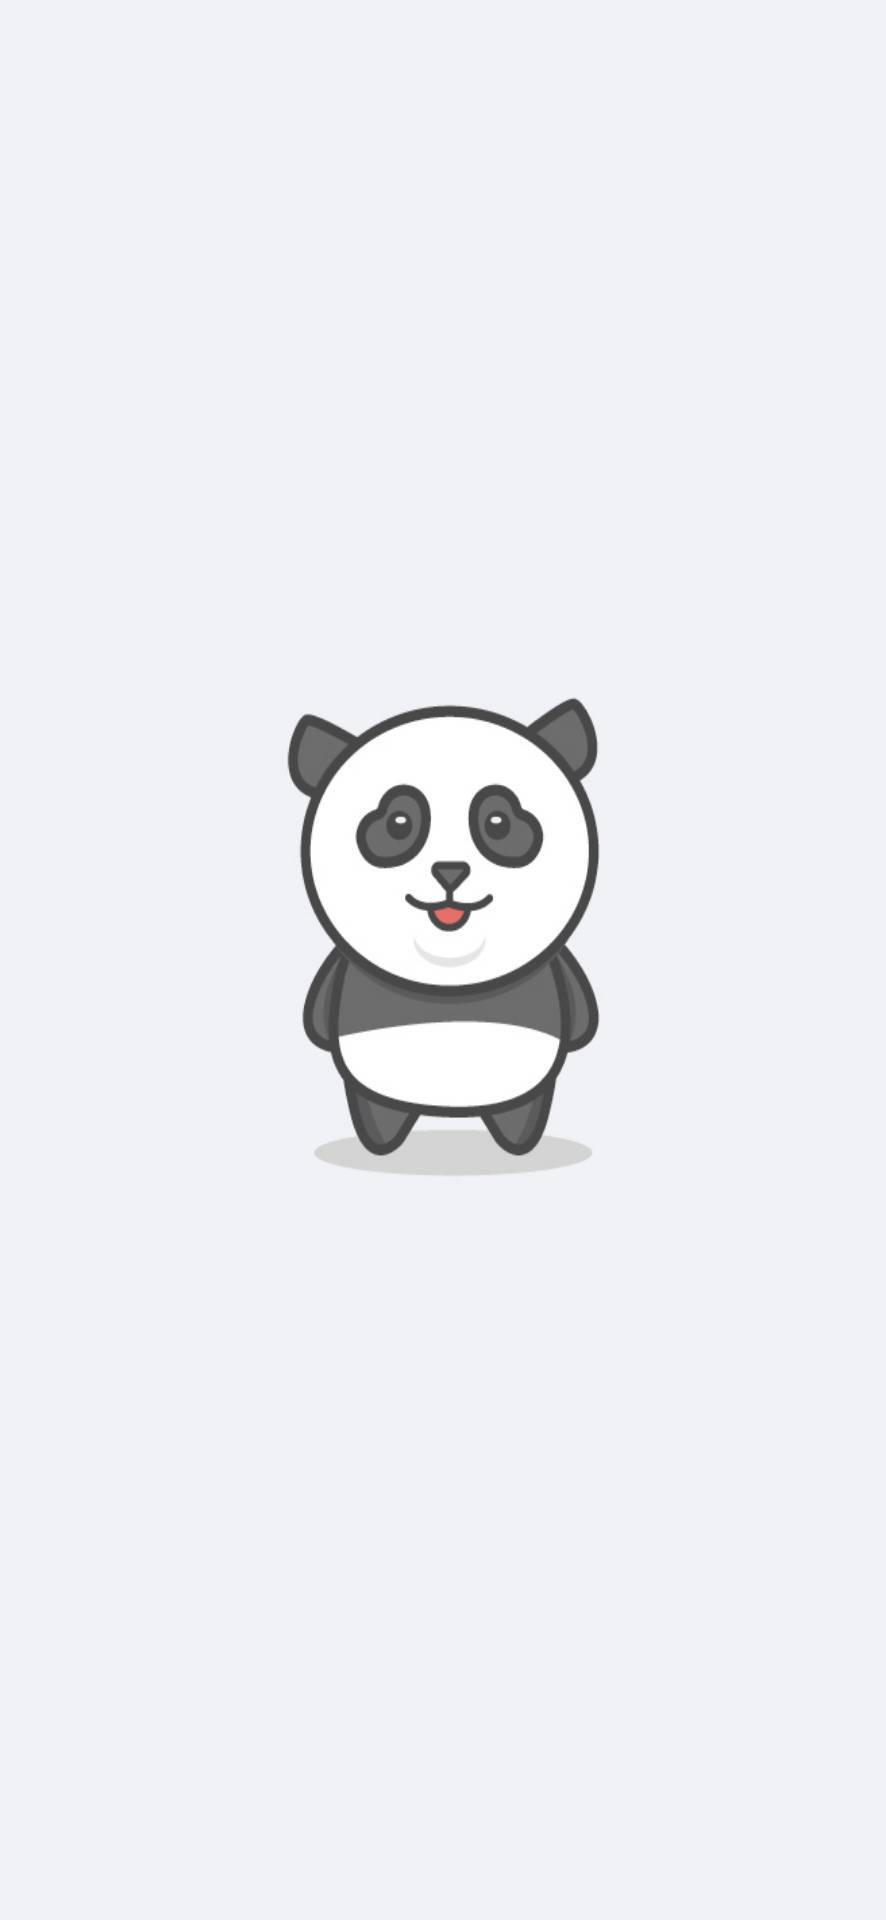 Để tìm kiếm một hình nền cho điện thoại của mình, thì hình nền Cute Panda là một sự lựa chọn rất tuyệt vời. Hình ảnh này thật dễ thương và mang lại một nụ cười cho mọi người. Nếu bạn muốn có một màn hình với hình ảnh dễ thương thì đây là điều bạn không nên bỏ lỡ!